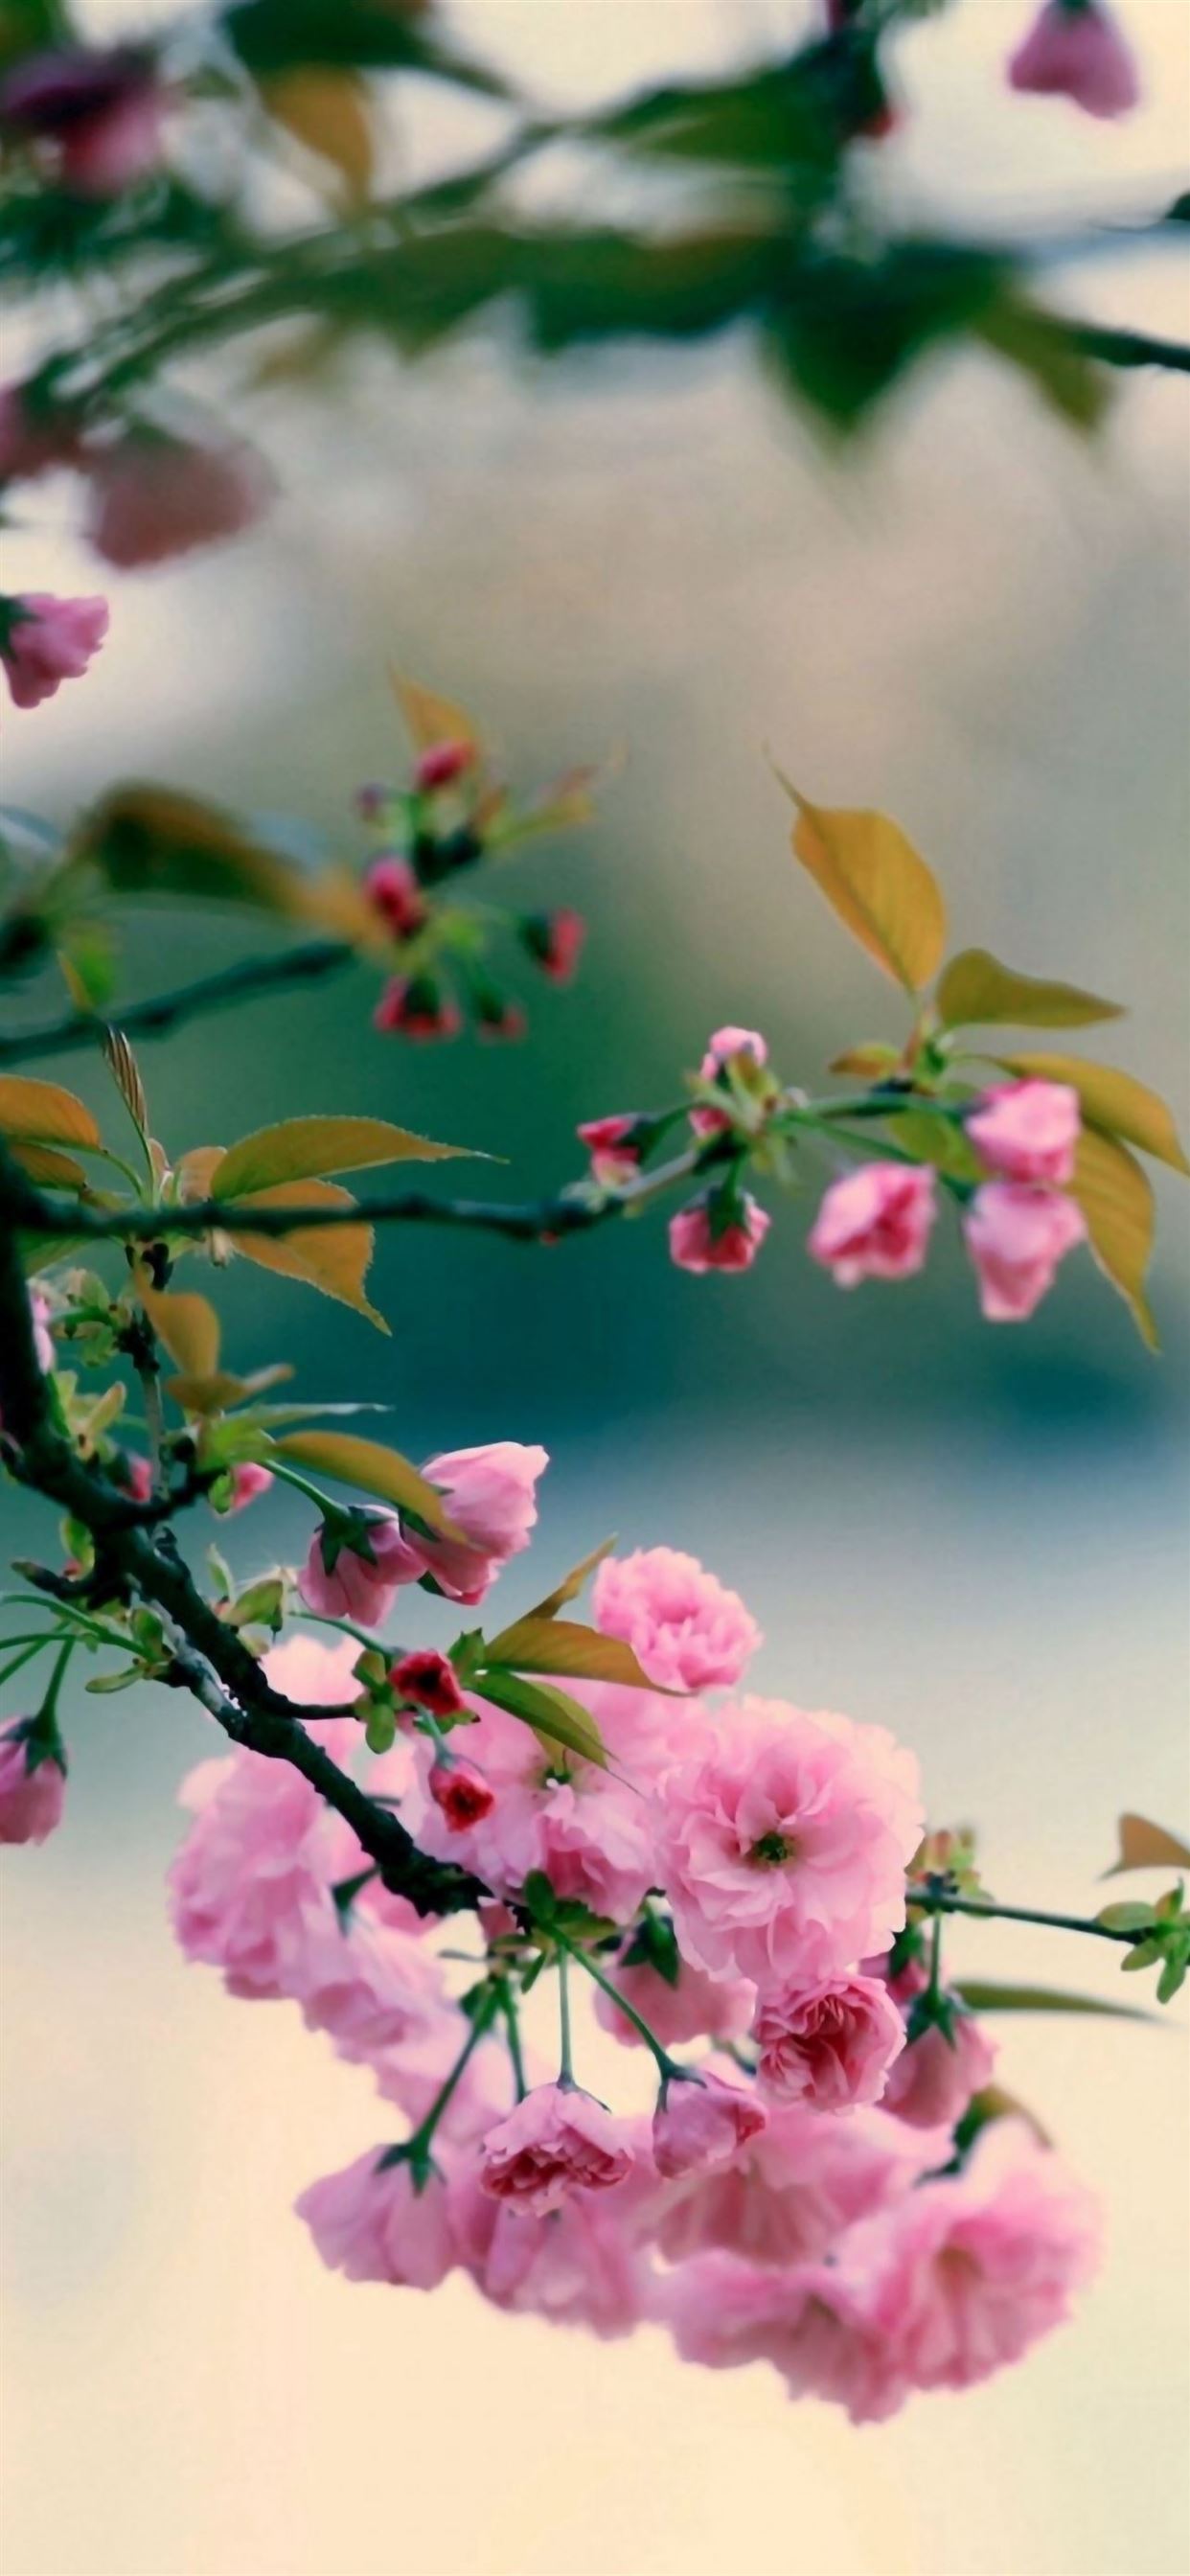 Xuân đang đến và khắp nơi đang rực rỡ hoa sắc. Bức ảnh liên quan đến từ khóa này sẽ khiến bạn ngỡ ngàng trước vẻ đẹp tuyệt vời của bức tranh thiên nhiên. 